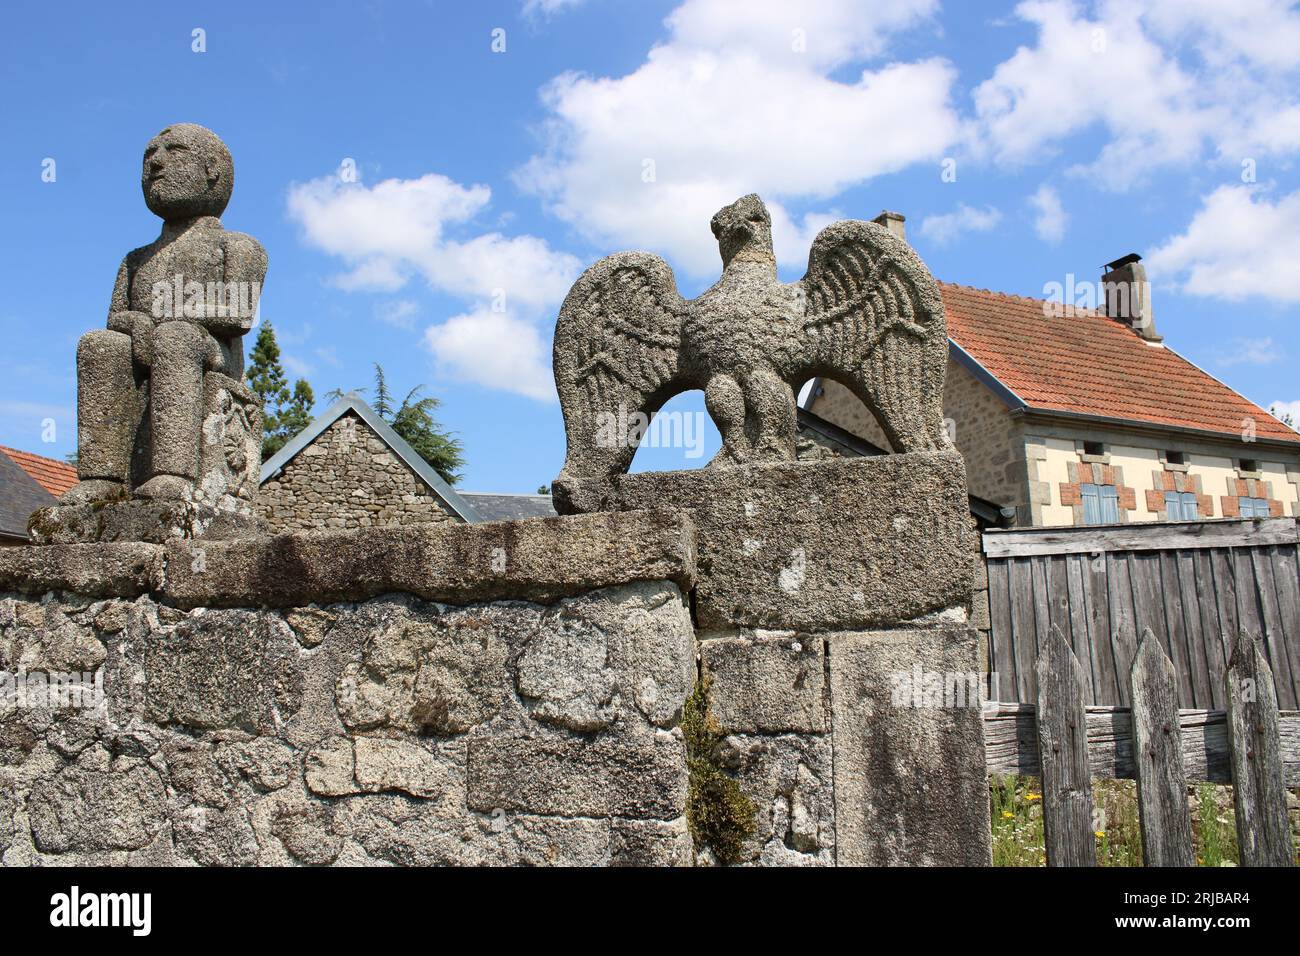 Une vue de deux sculptures en granit du célèbre artiste du 19e siècle François Michaud situées dans le village de Masgot la Creuse dans le centre de la France. Banque D'Images